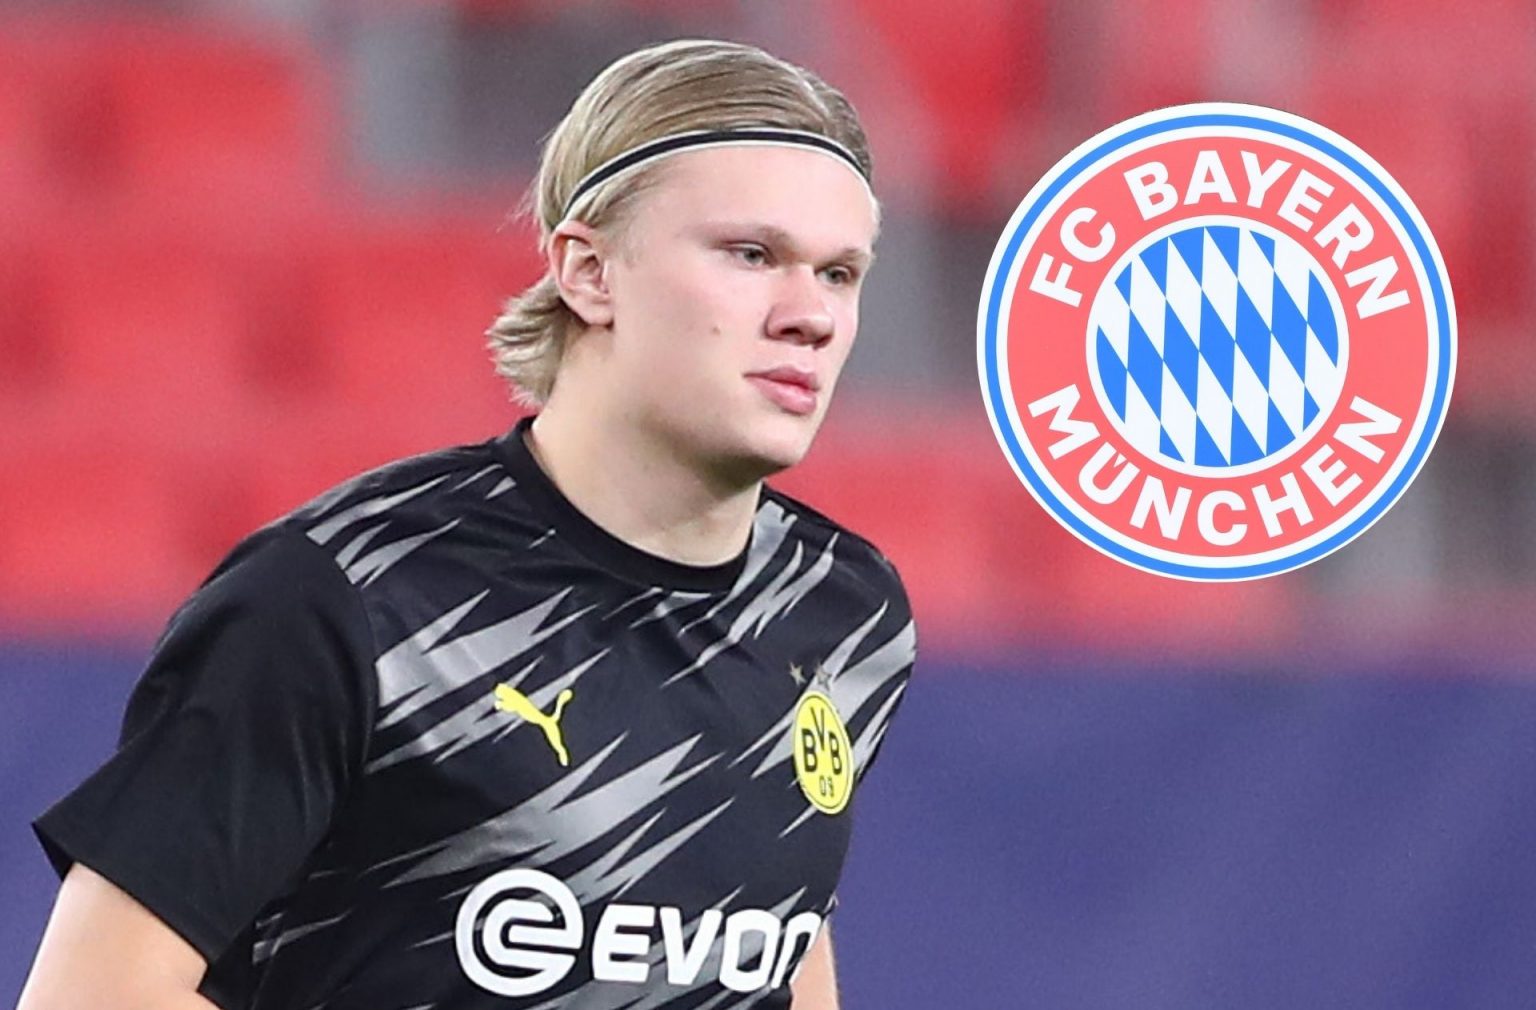 Le Bayern Munich confirme son intérêt pour la signature d’Erling Haaland